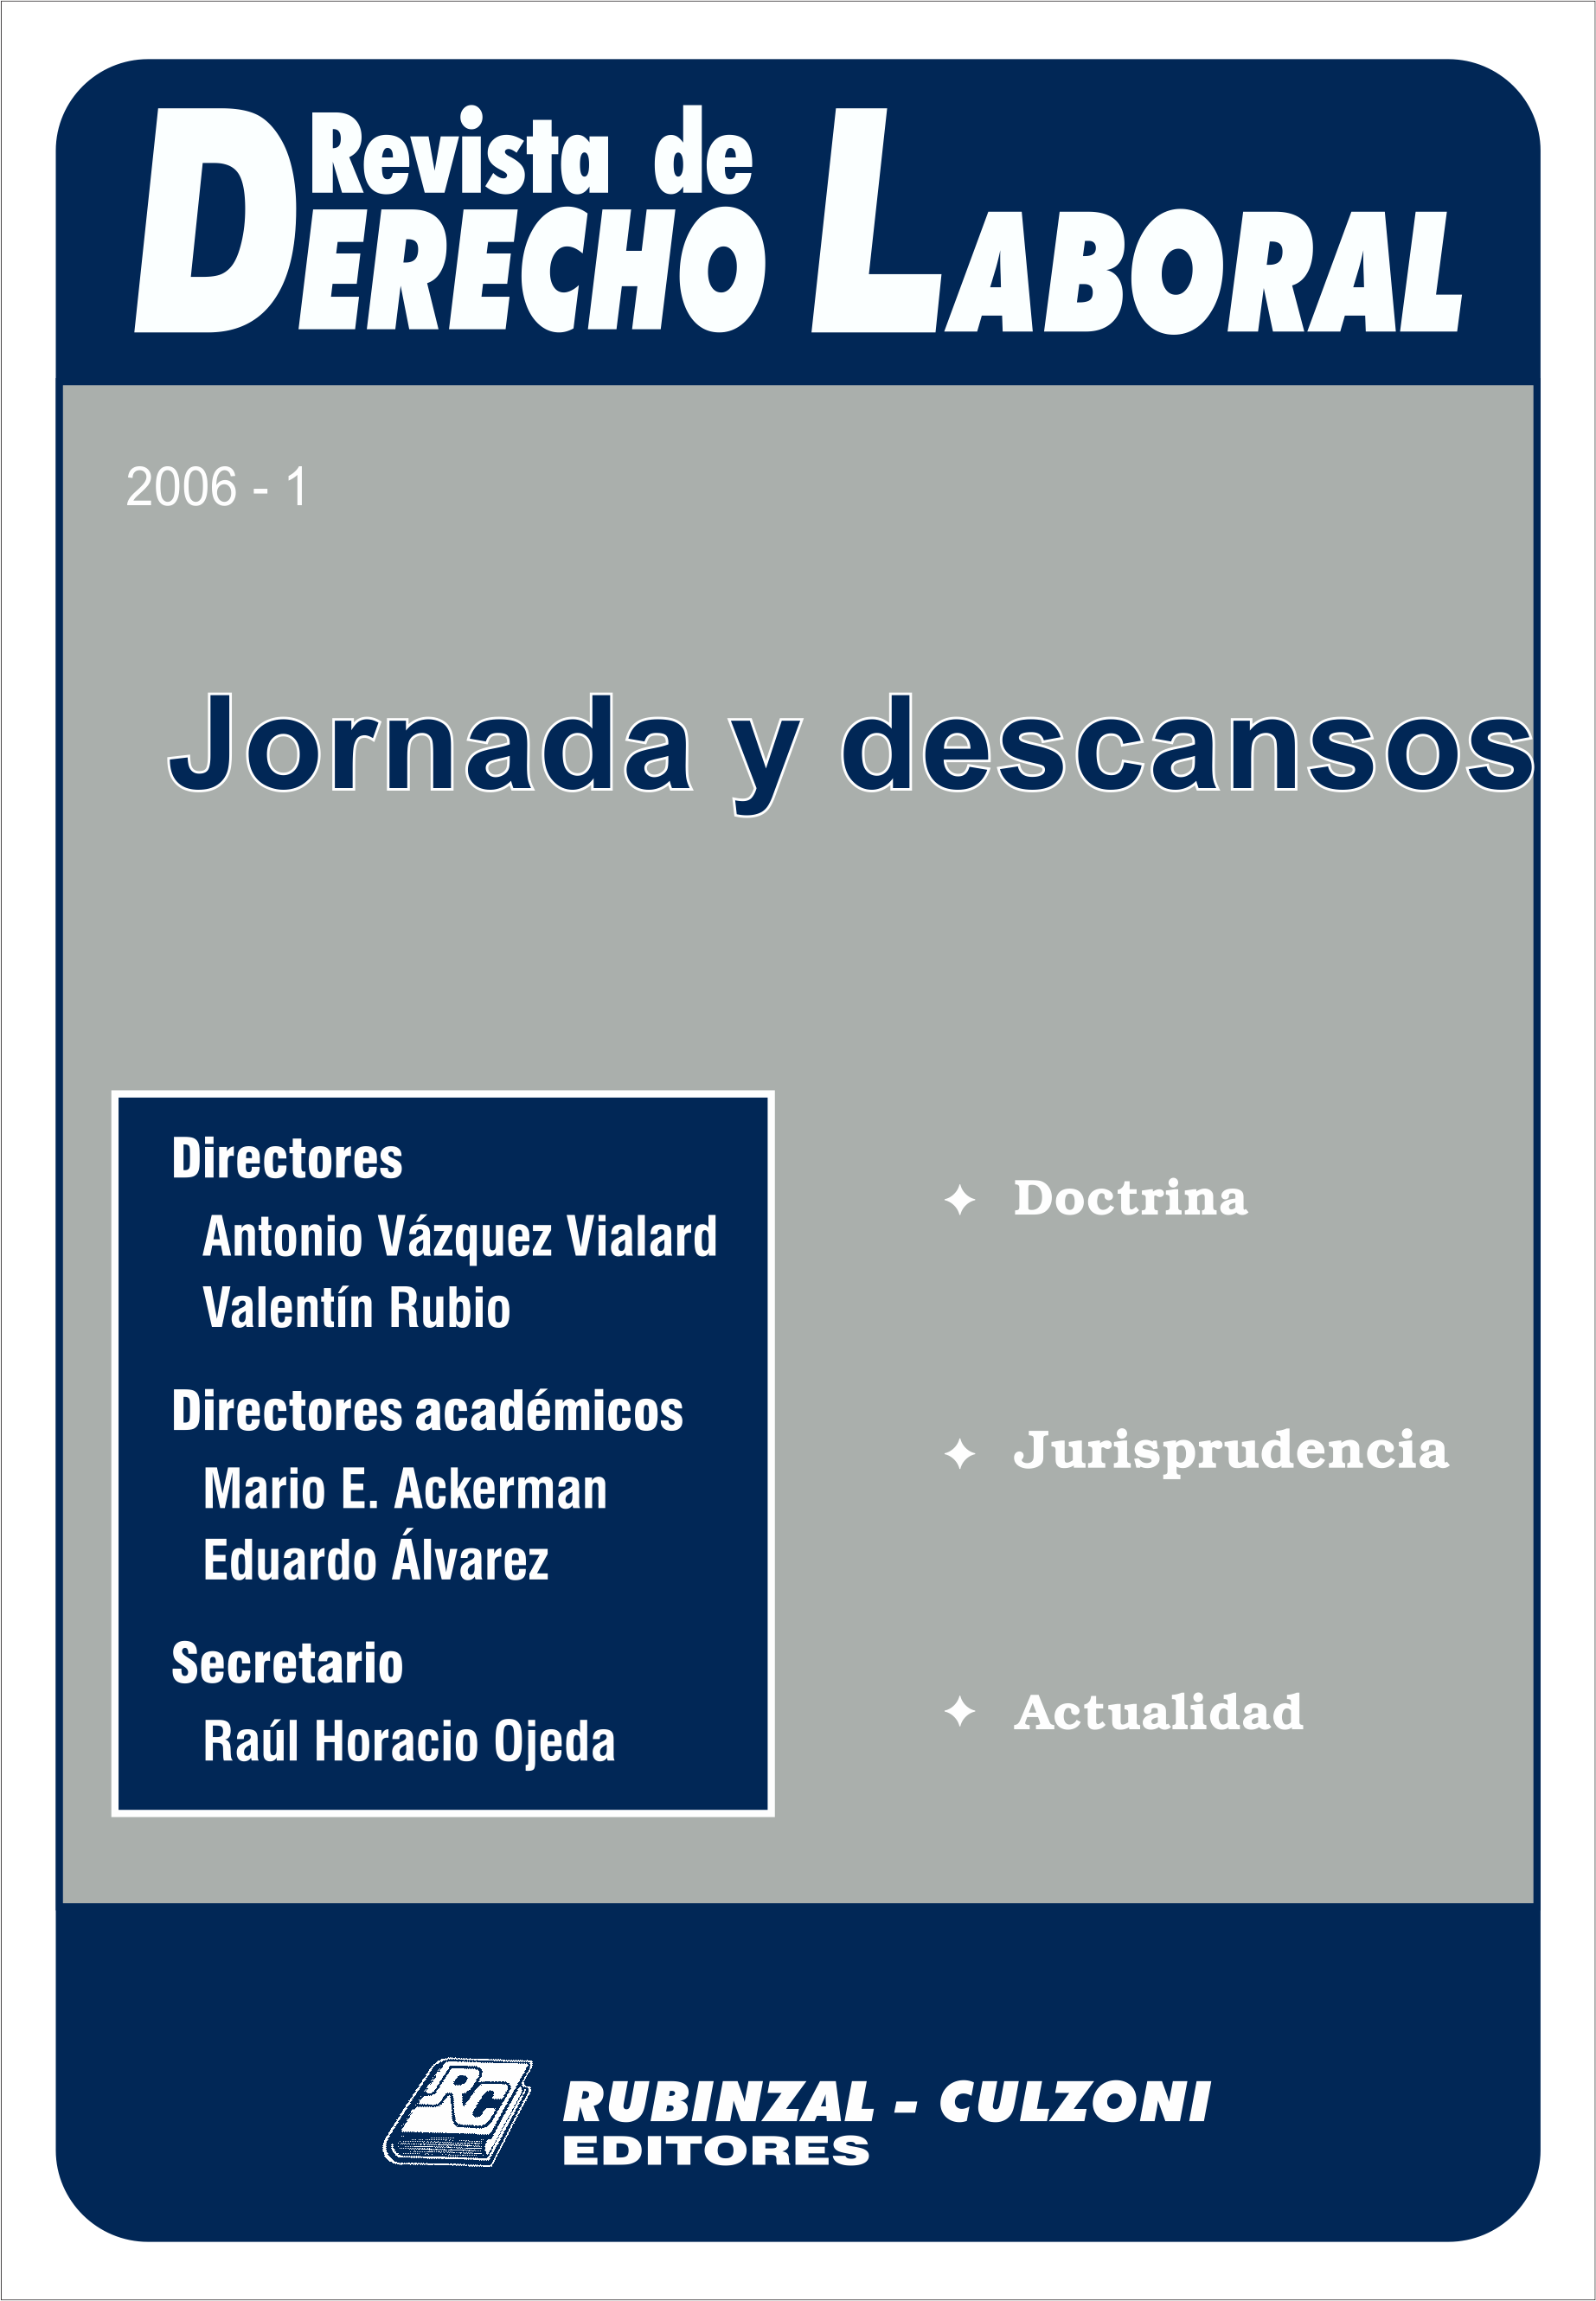 Revista de Derecho Laboral - Jornada y descansos